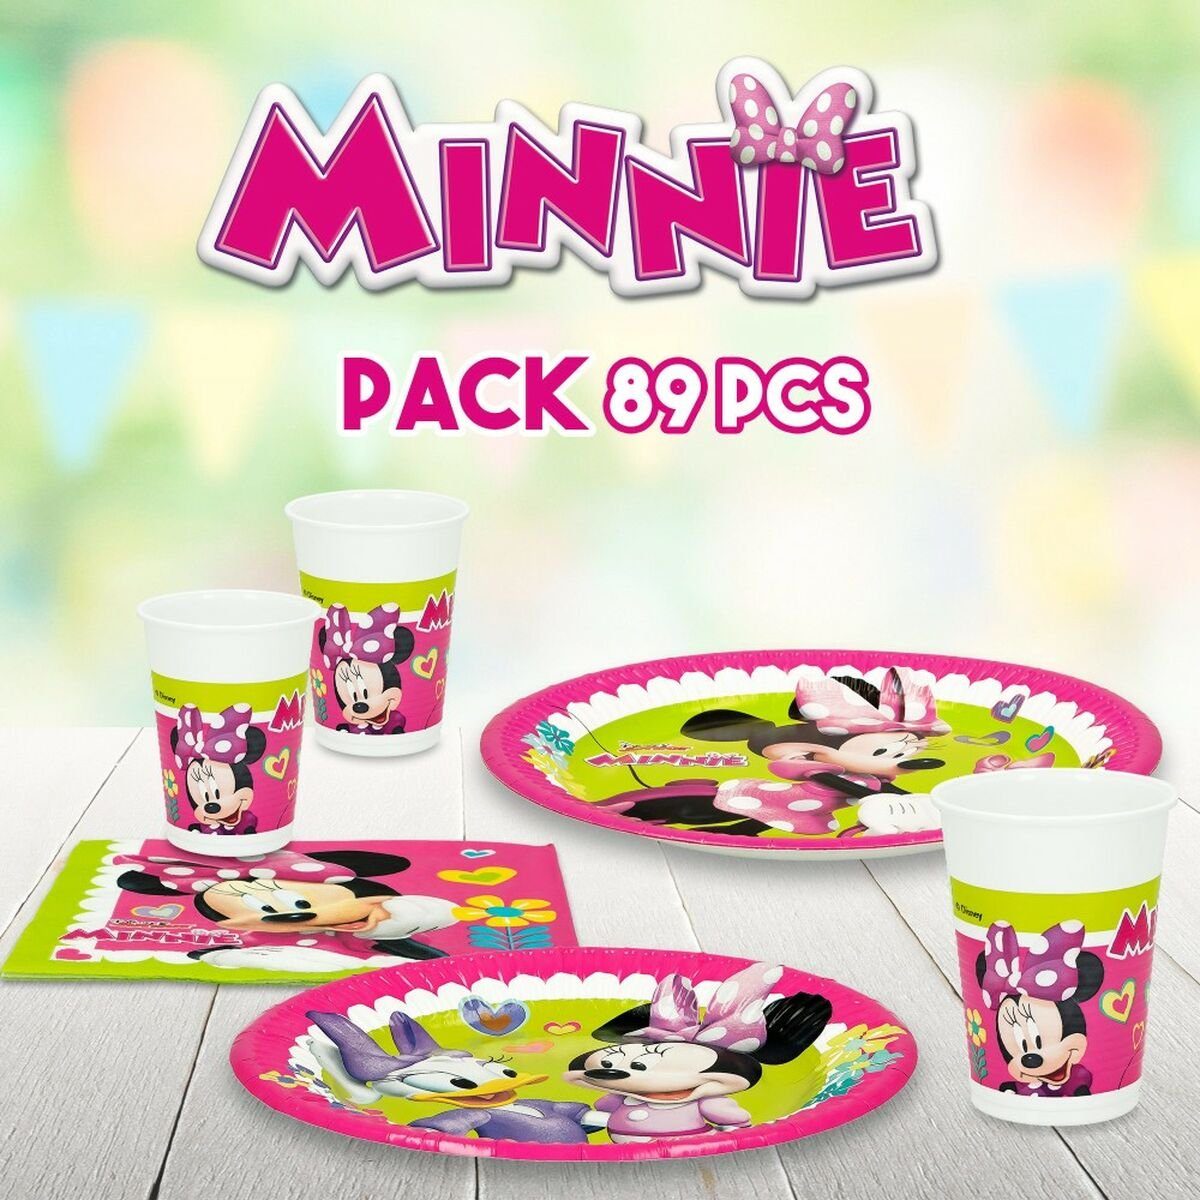 Disney Minnie Mouse Einweggeschirr-Set Set Stücke Partyartikel Happy Mouse 89 Deluxe Minnie 16